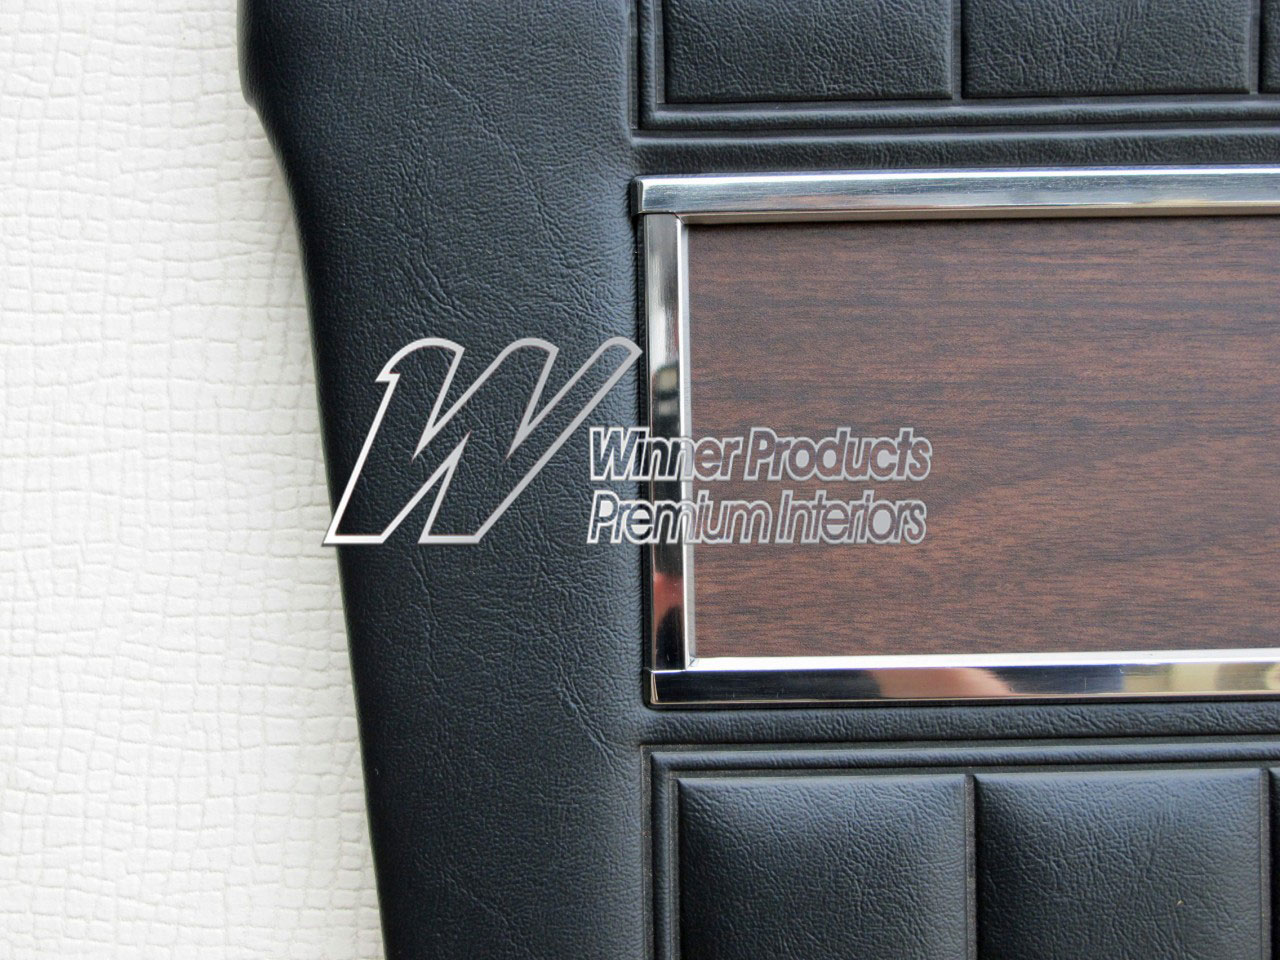 Holden Premier HK Premier Sedan 10S Black & Castillion Weave Door Trims (Image 3 of 3)